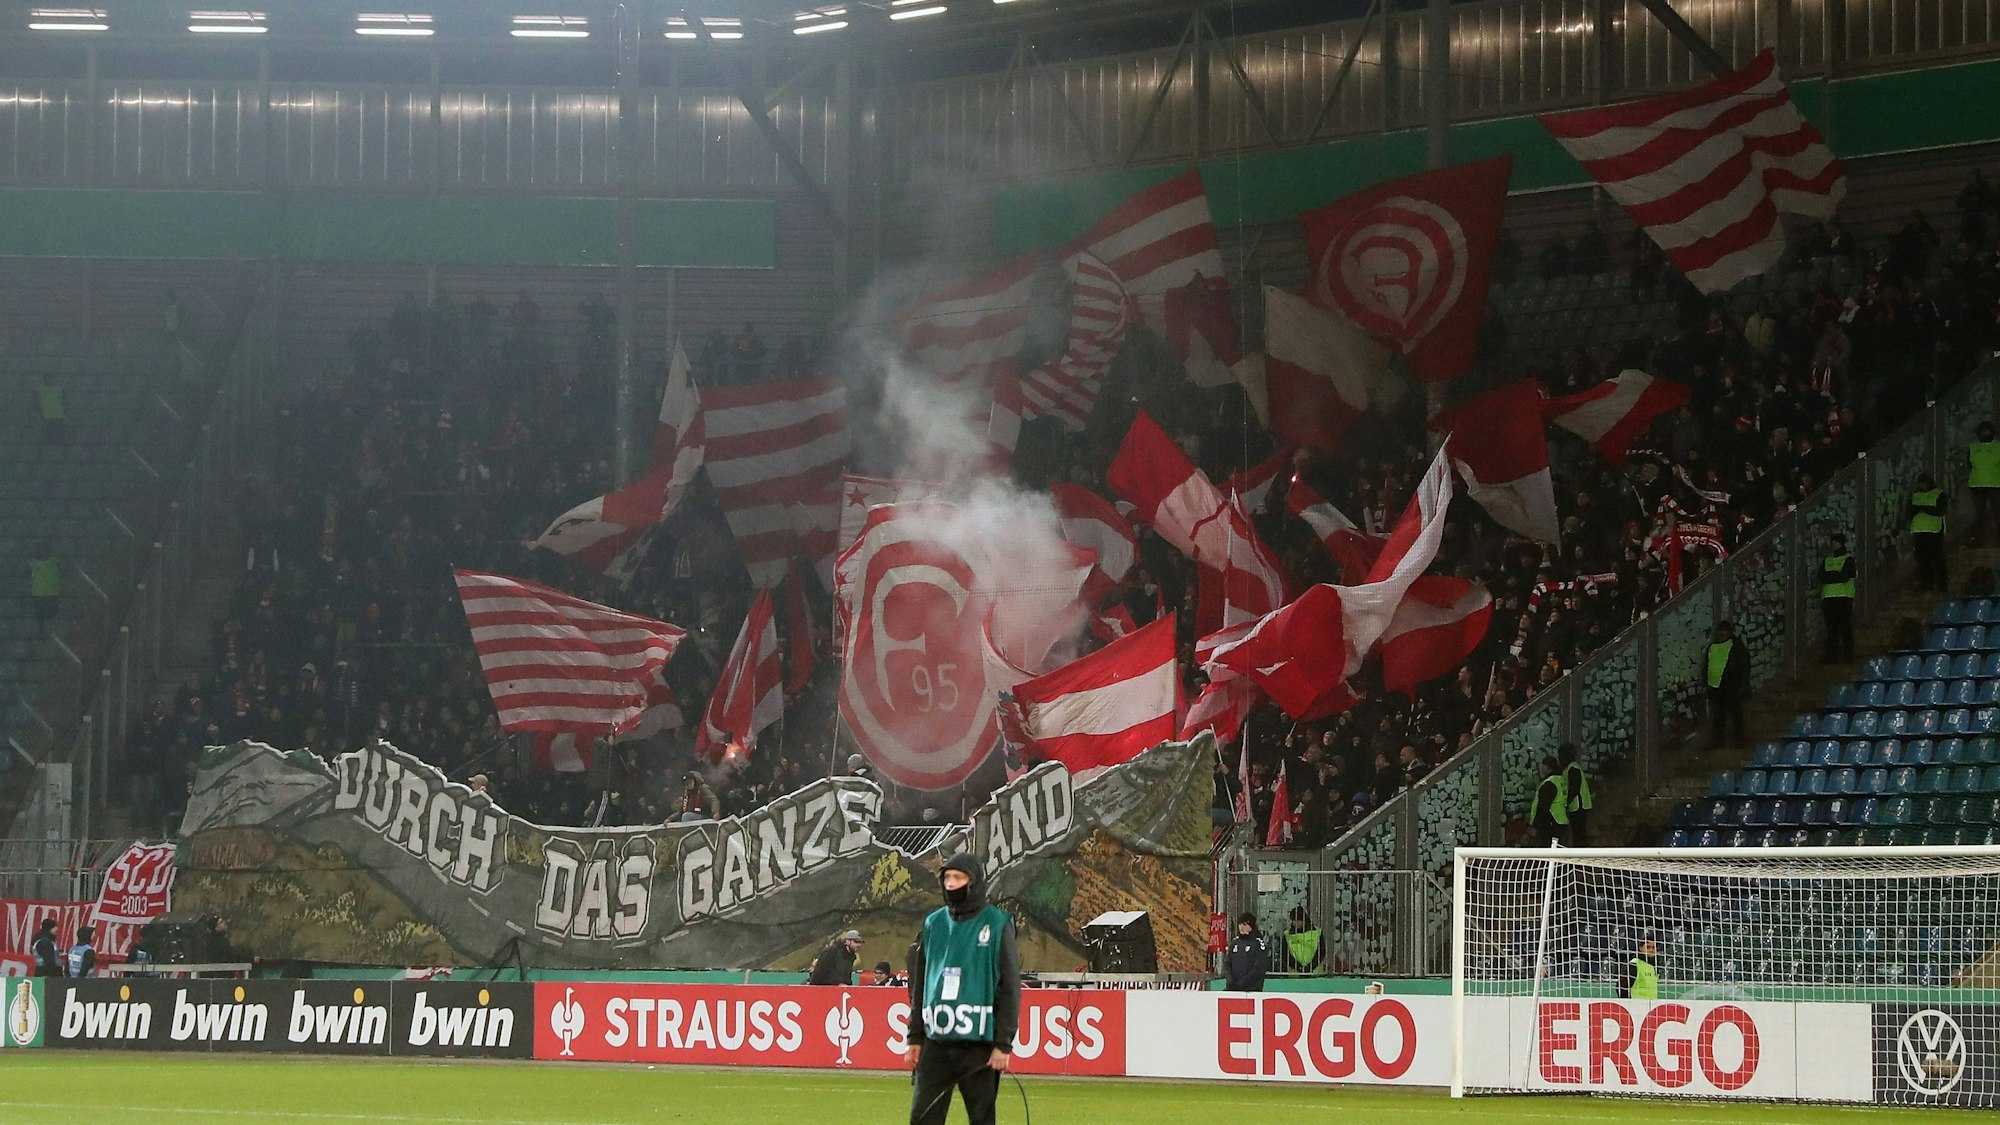 Für Fortuna Düsseldorf geht es im Pokal erneut auswärts ran. Der Anhang zeigt beim Achtelfinal-Spiel in Magedburg eine entsprechende Choreo unter dem Motto „Durch das ganze Land“.